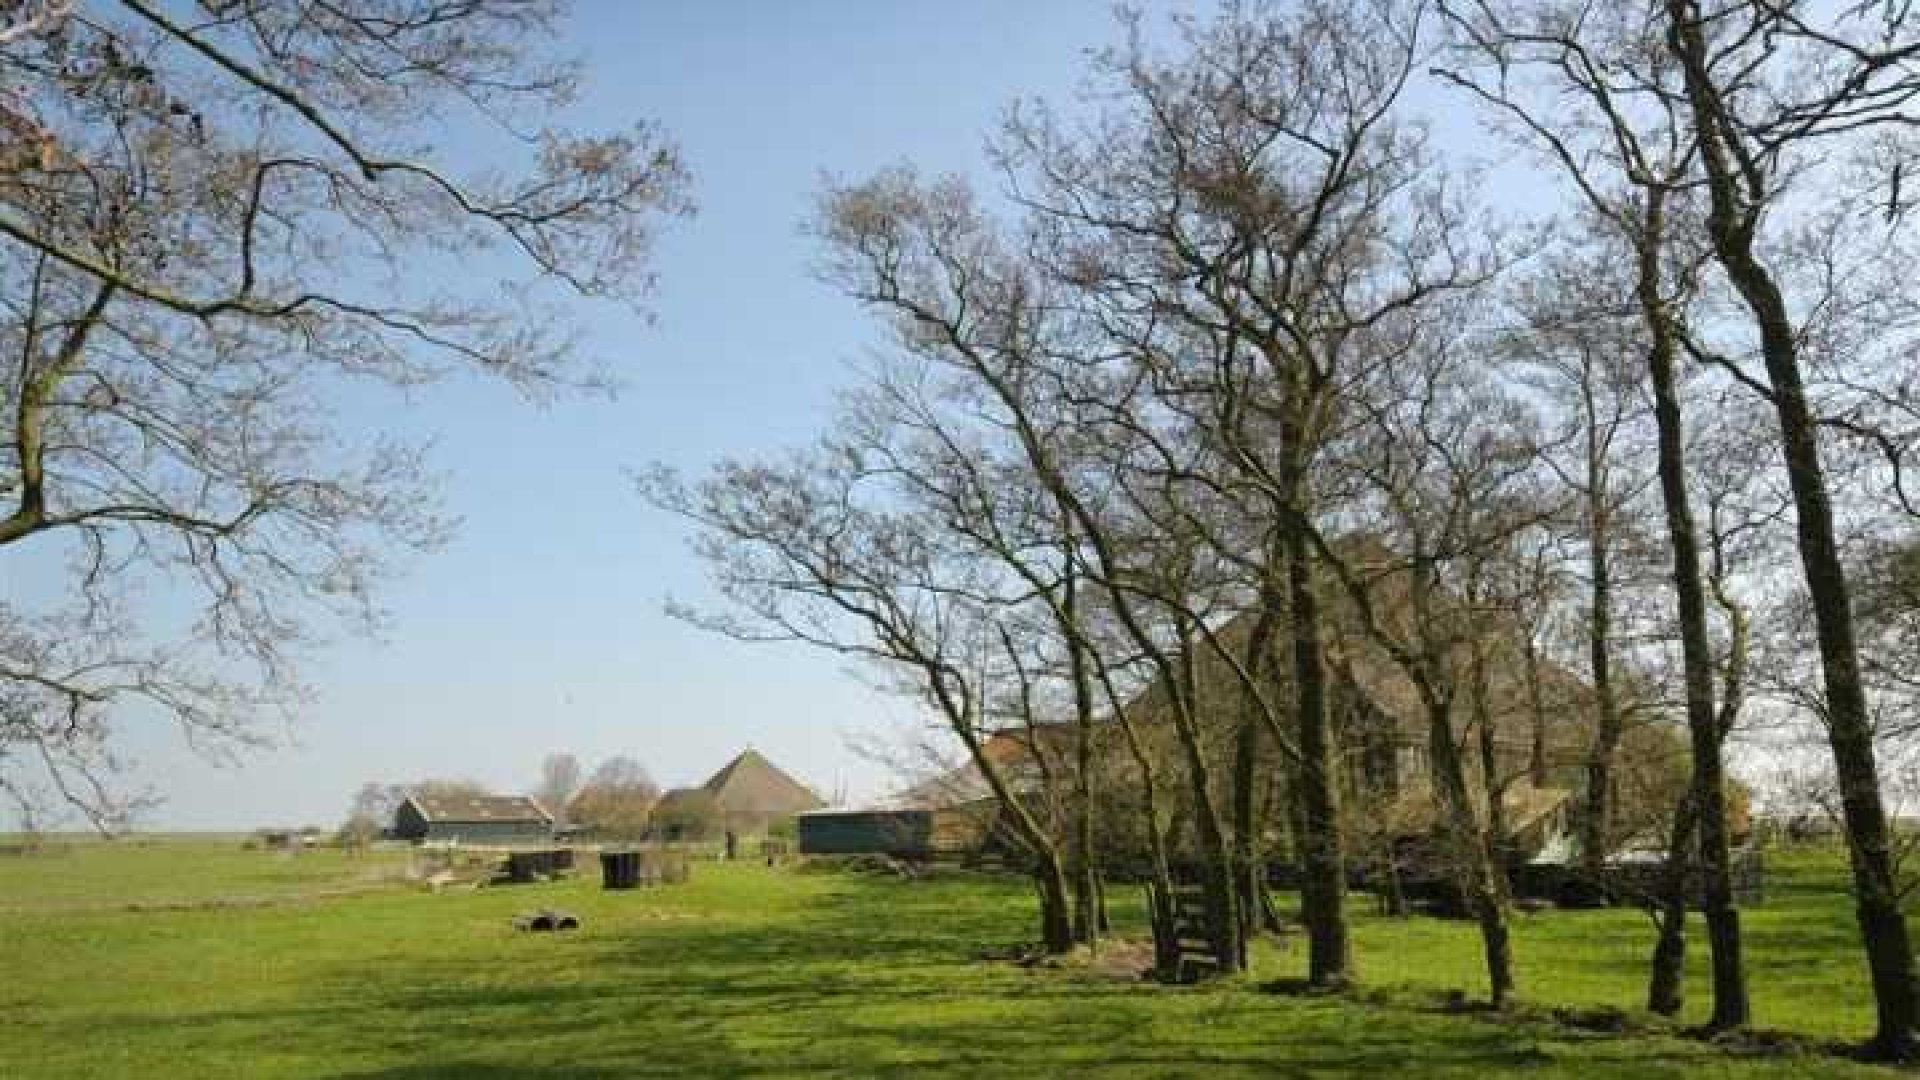 Gouden Kalf winnaar Peter Paul Muller verbouwde deze boerderij grotendeels met eigen handen. Zie foto's